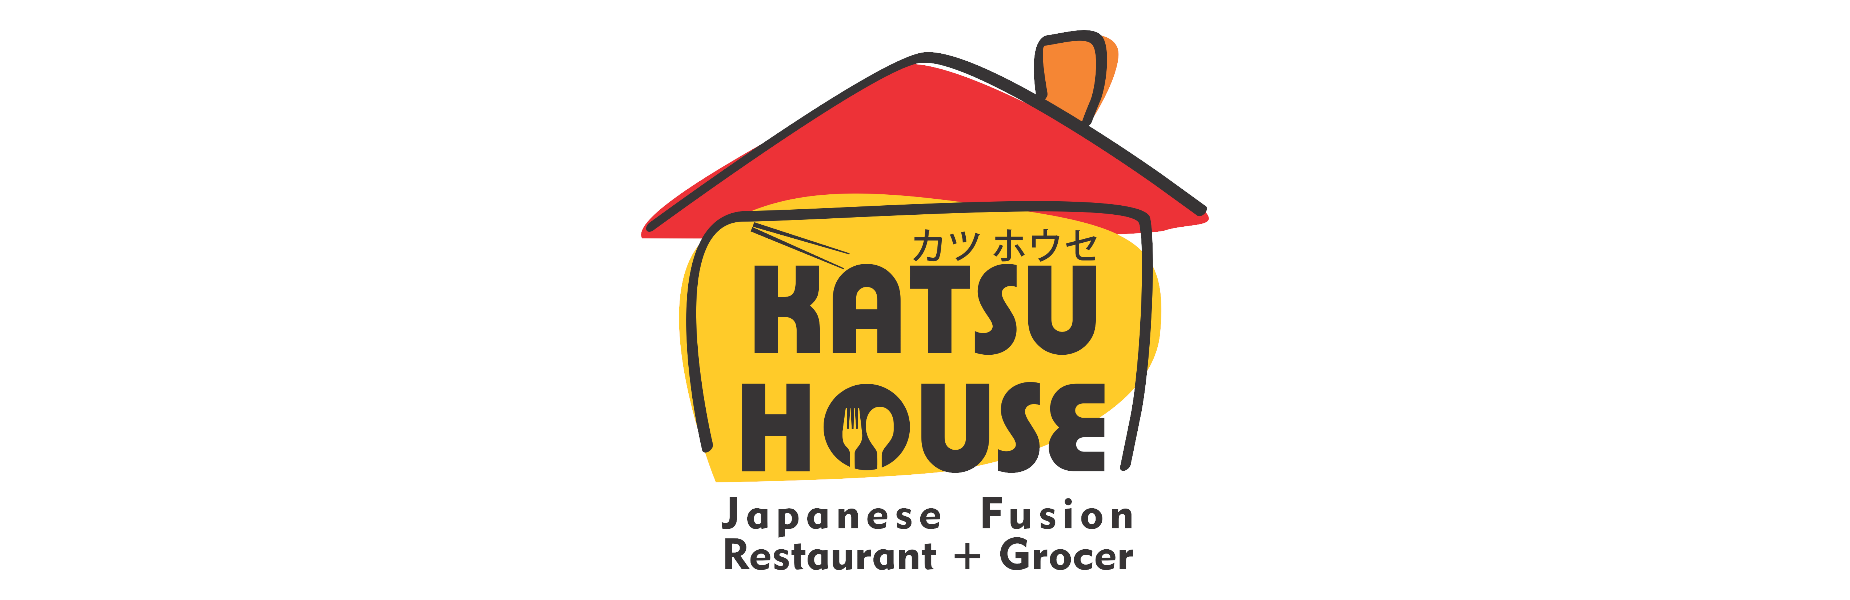 Katsu House